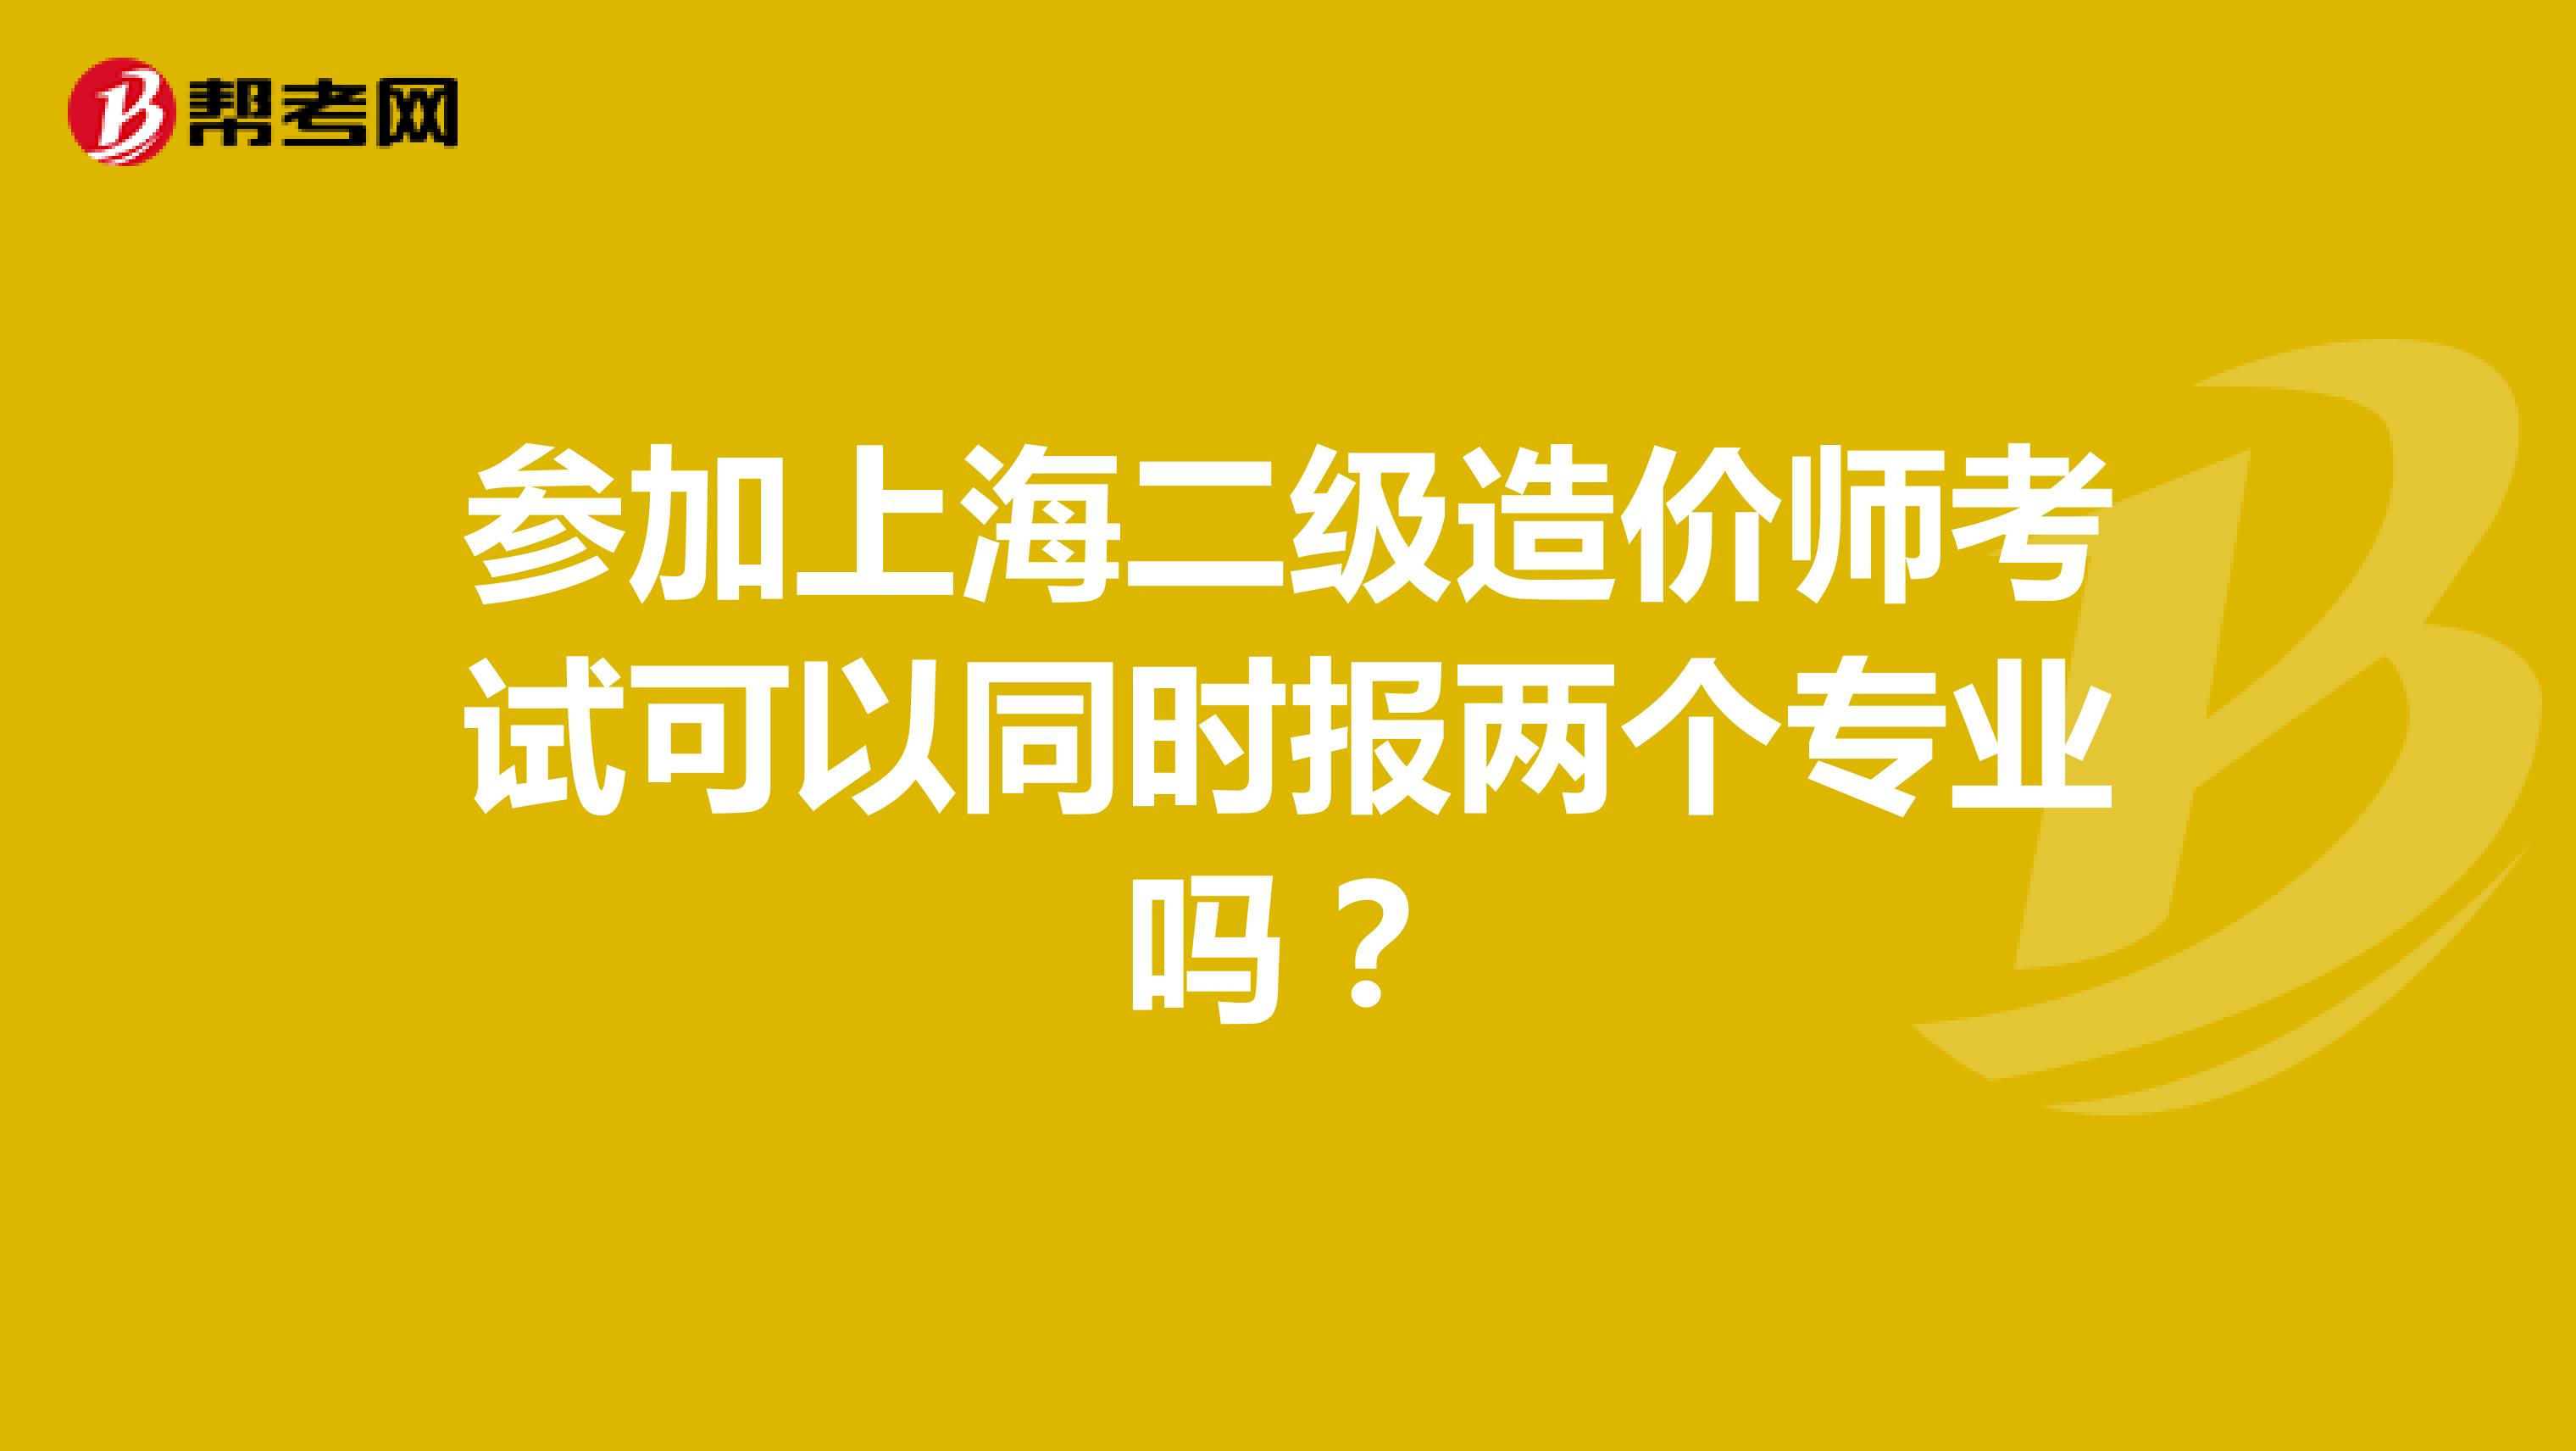 参加上海二级造价师考试可以同时报两个专业吗？